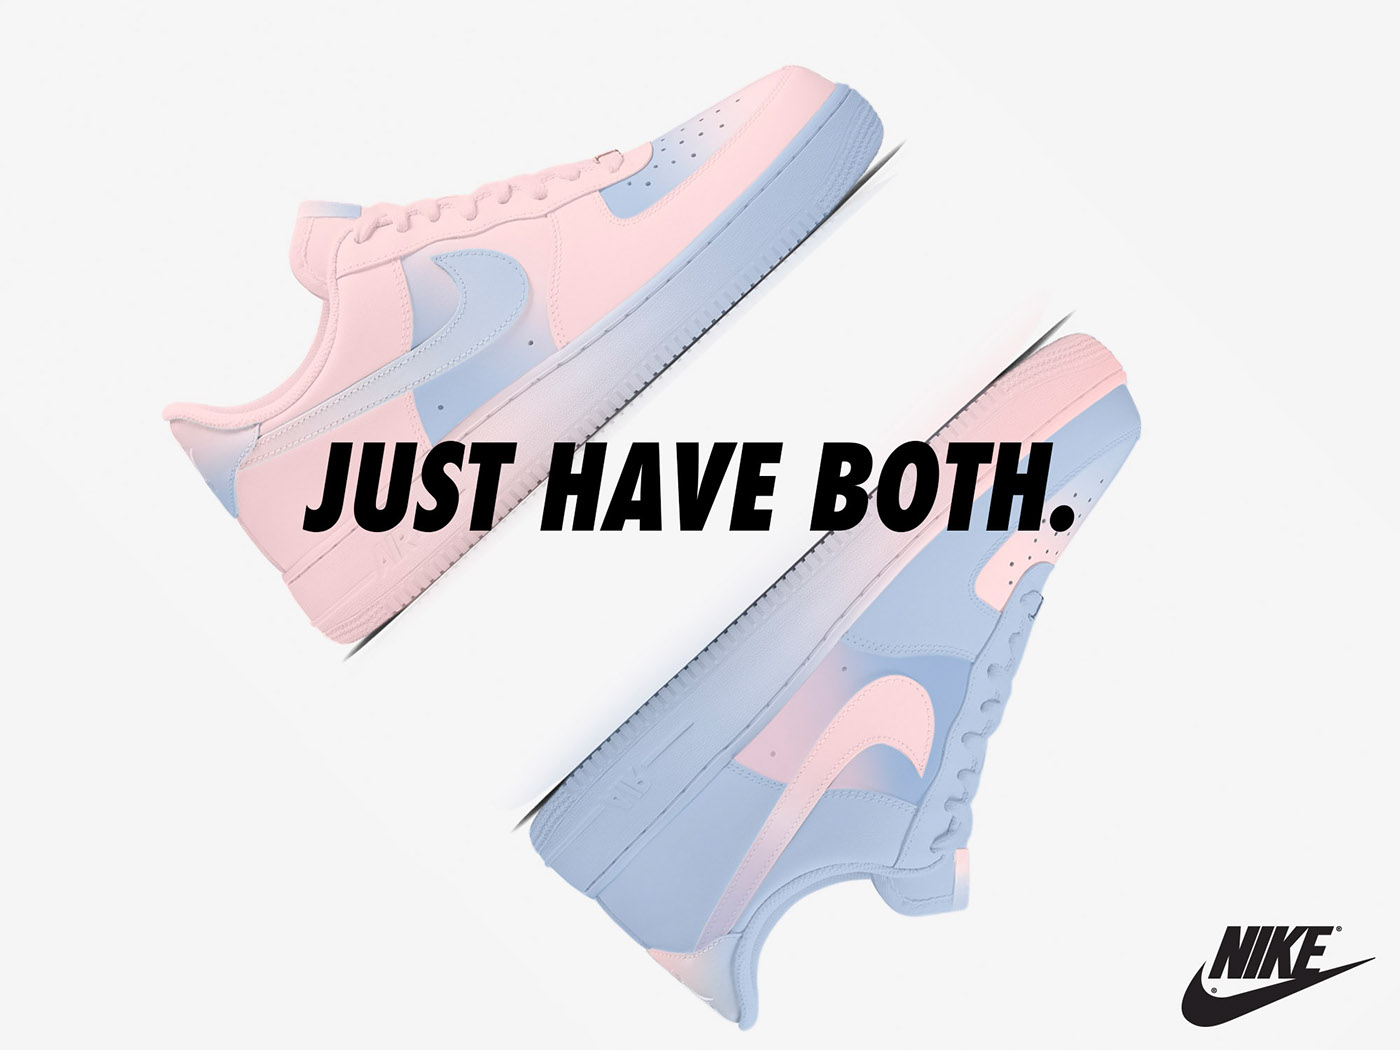 Nike sneakers pantone